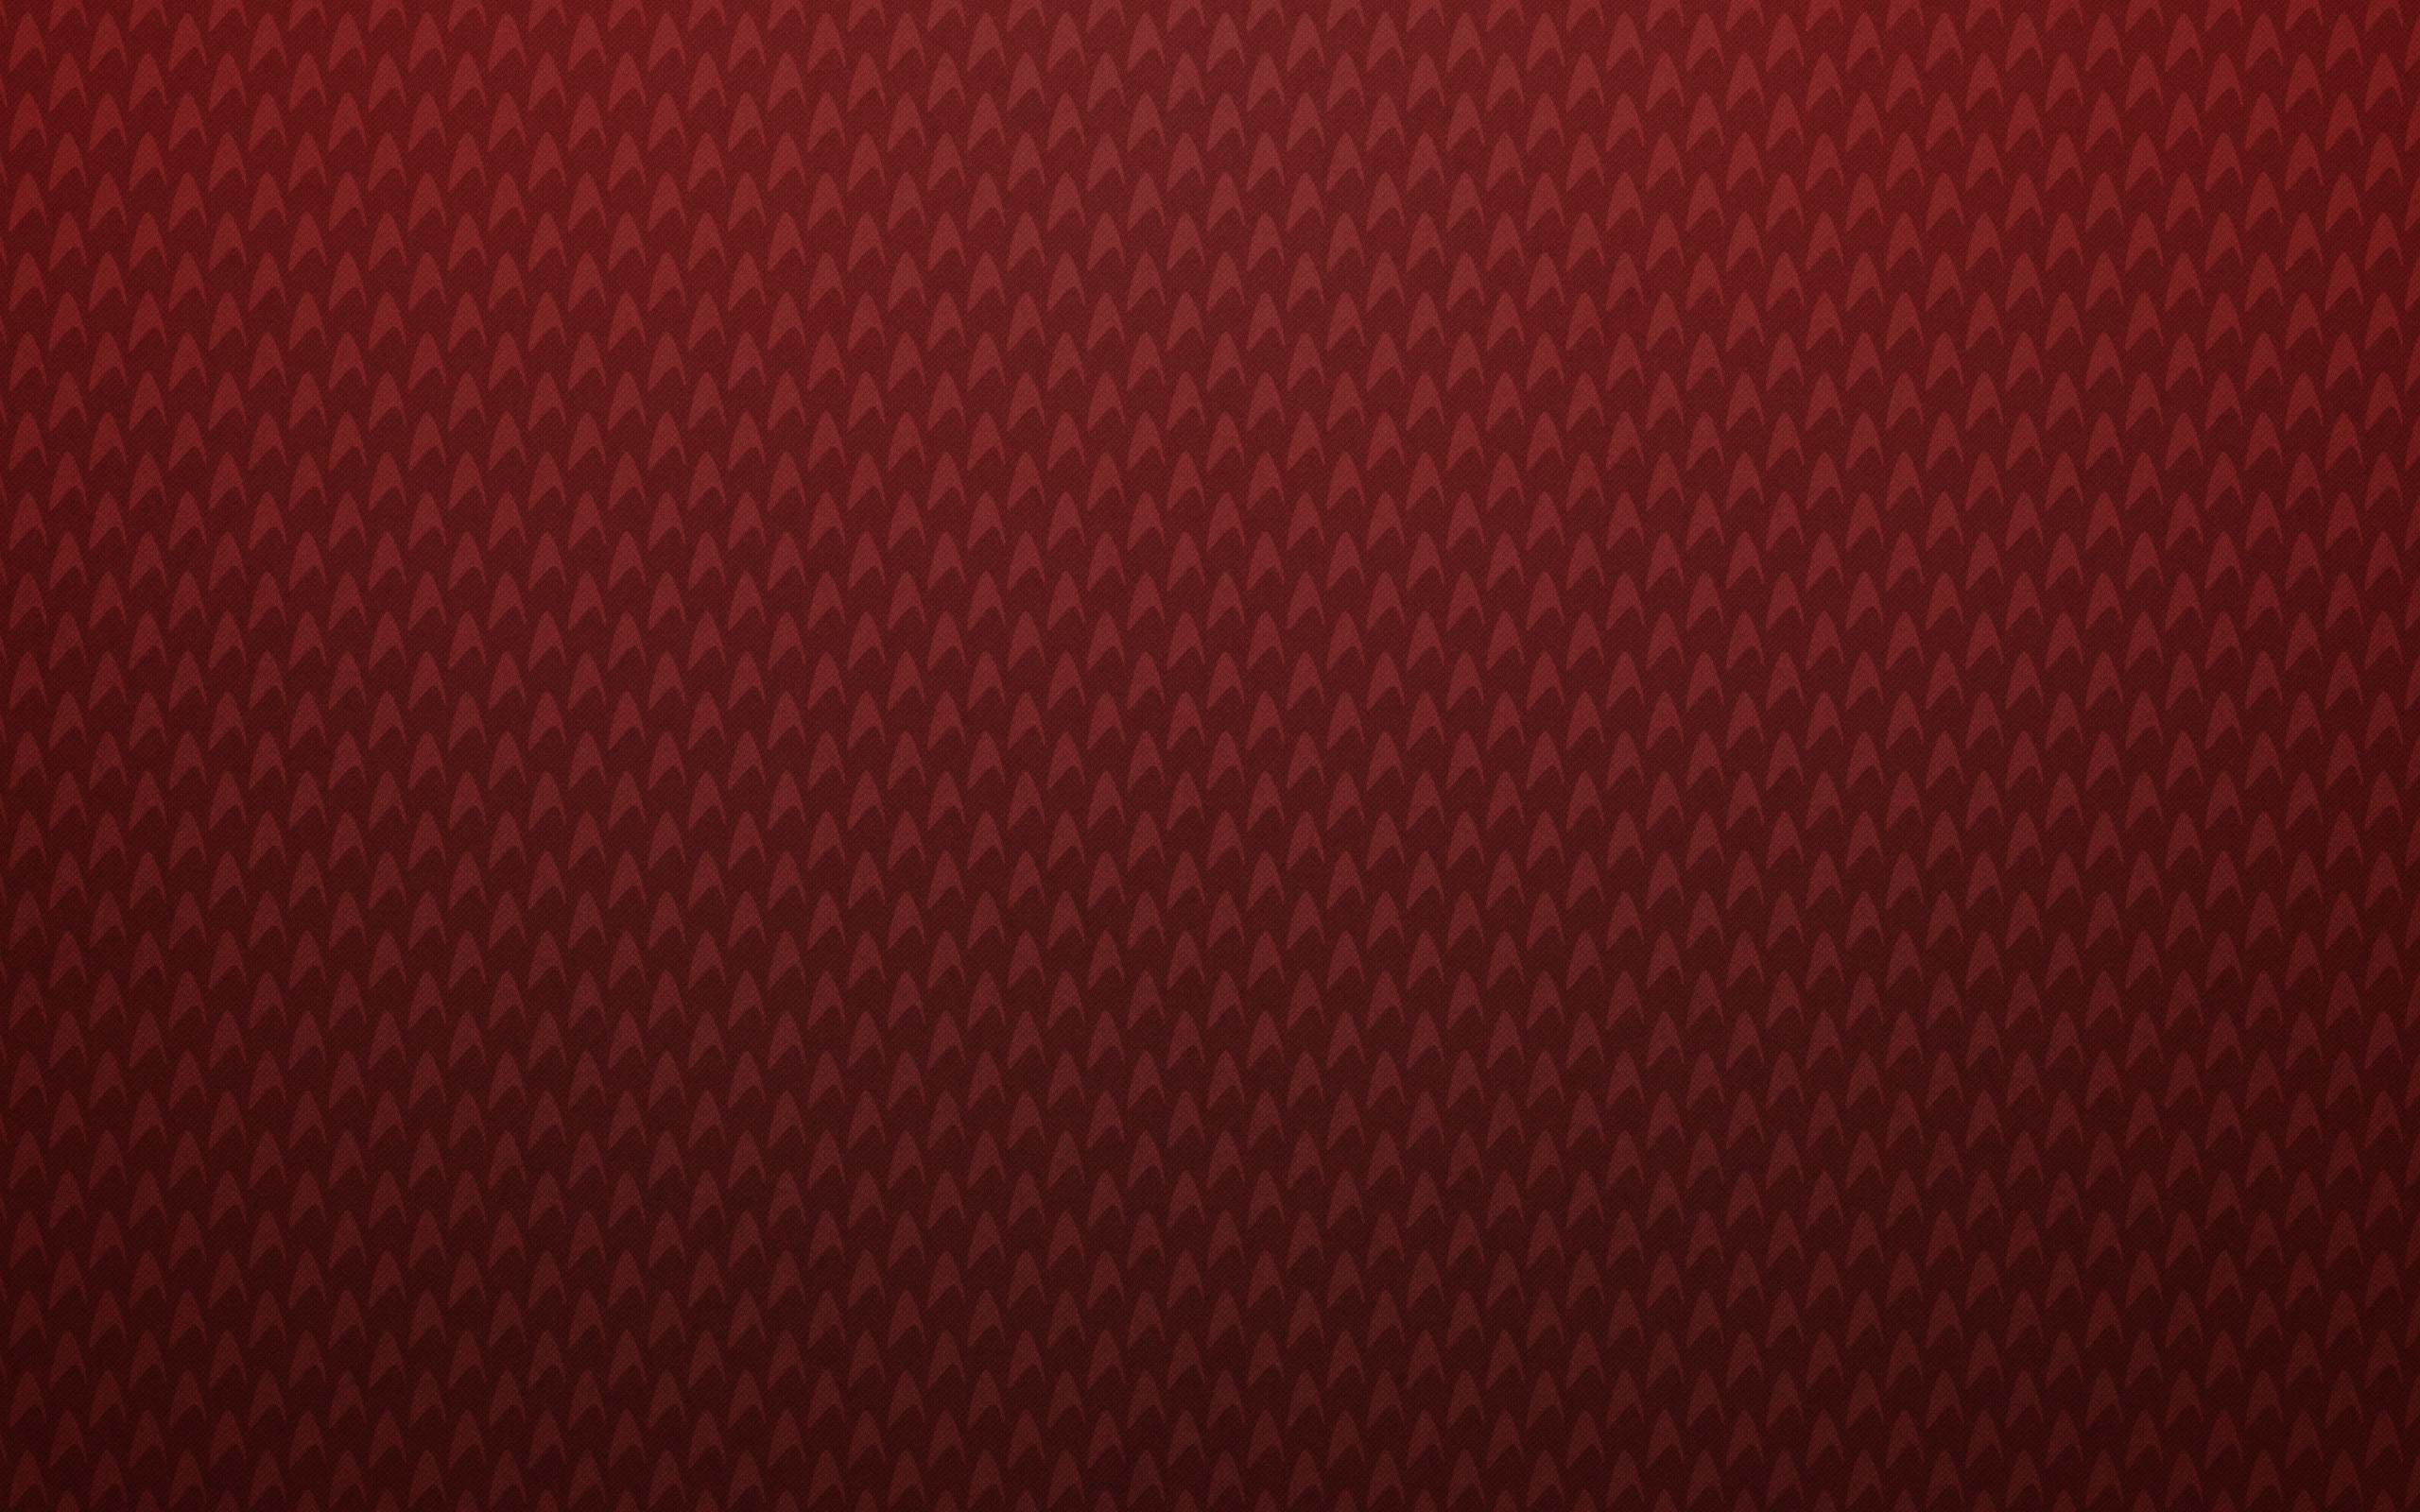 Best Textured Background 32 Textured Wallpaper Hd Free - Star Trek Background Red - HD Wallpaper 